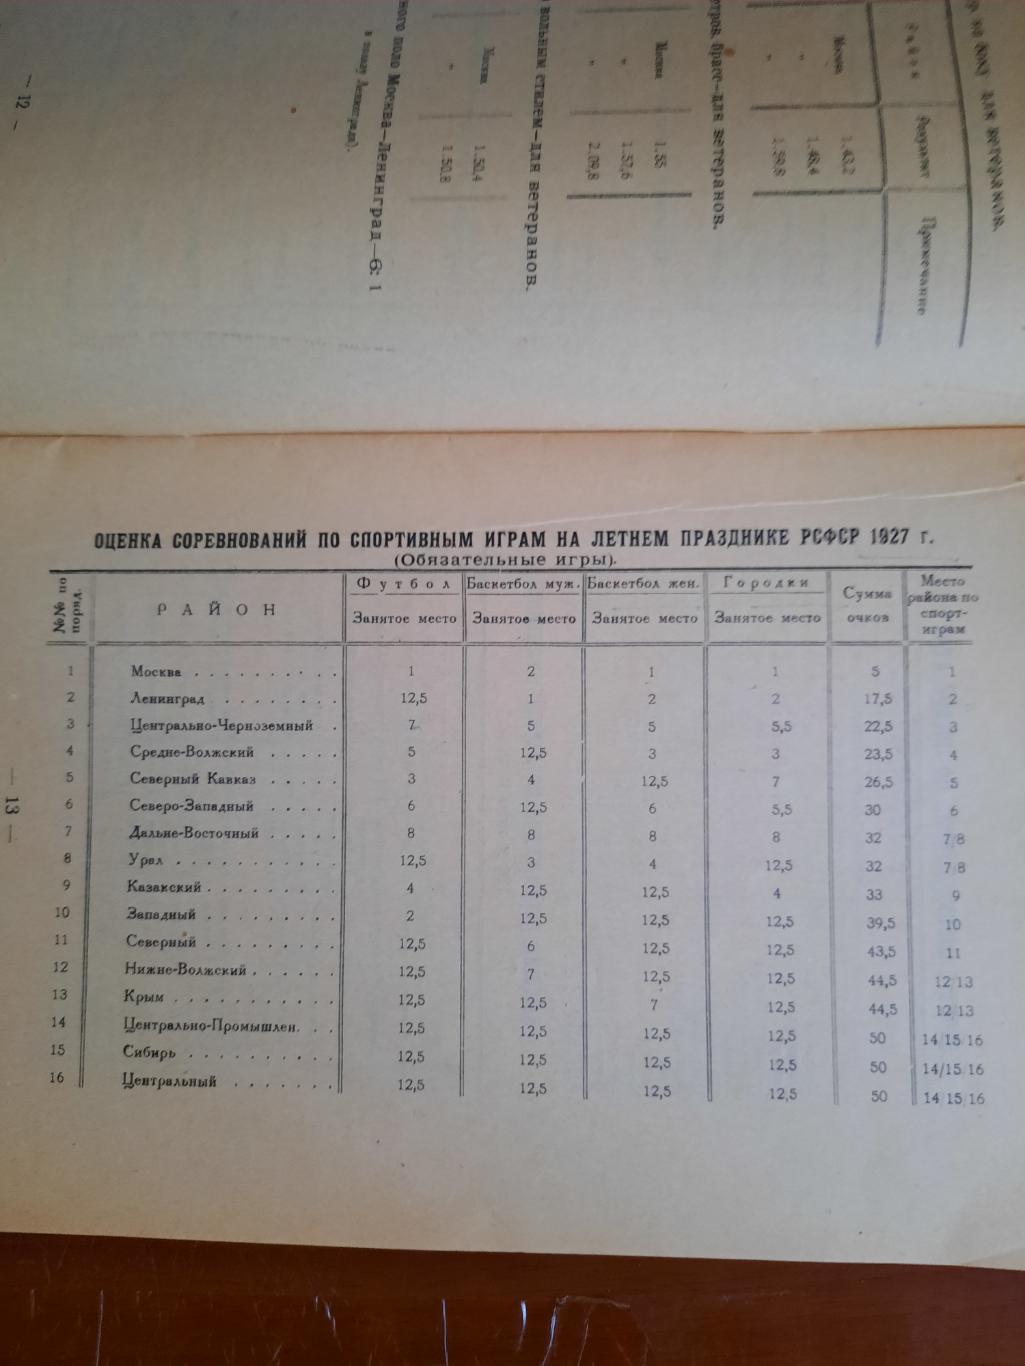 Бюллетень ВСФК № 9 1927 г. итоги первенства РСФСР футбол, легкая атлетика и т.д. 1